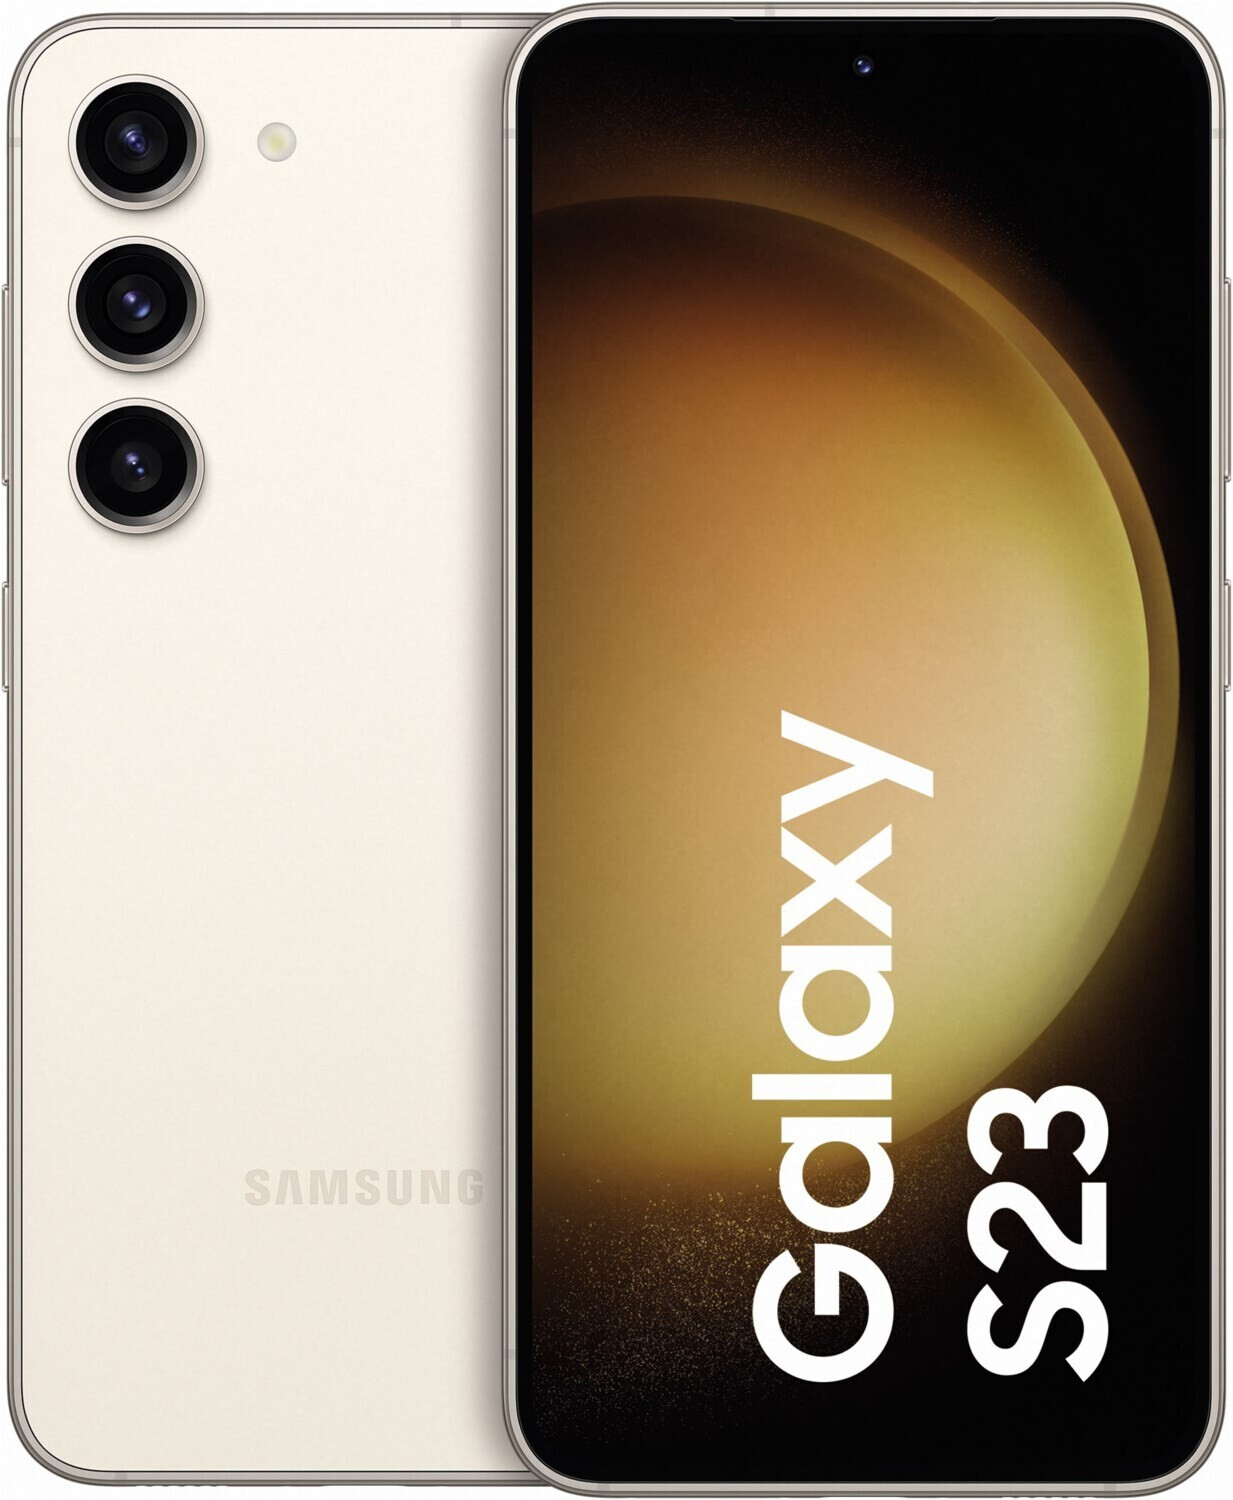 Samsung Galaxy S23 FE características, precio y ficha técnica